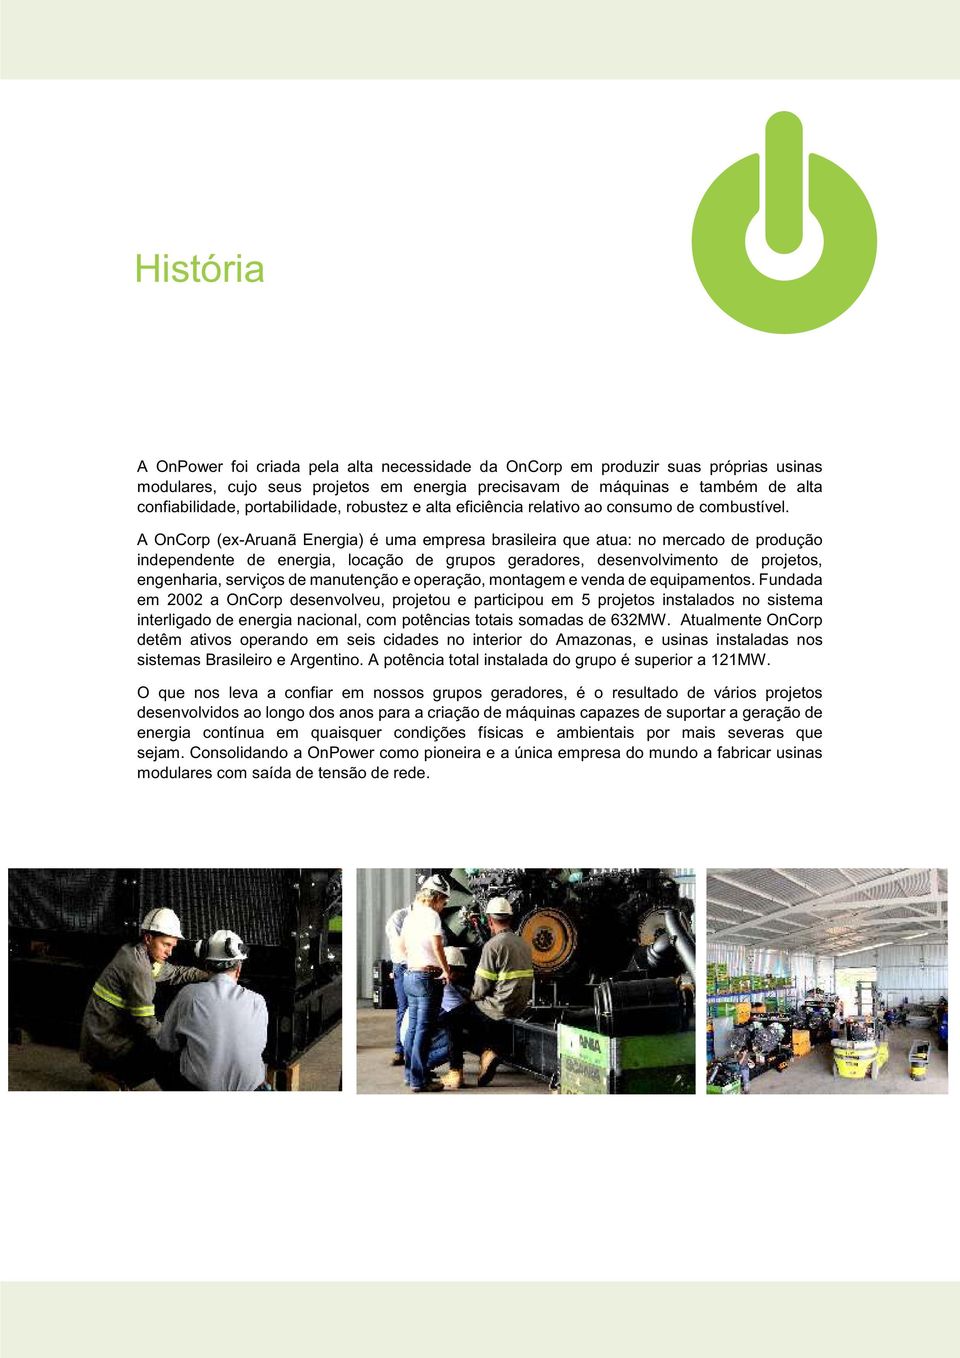 A OnCorp (ex-aruanã Energia) é uma empresa brasileira que atua: no mercado de produção independente de energia, locação de grupos geradores, desenvolvimento de projetos, engenharia, serviços de